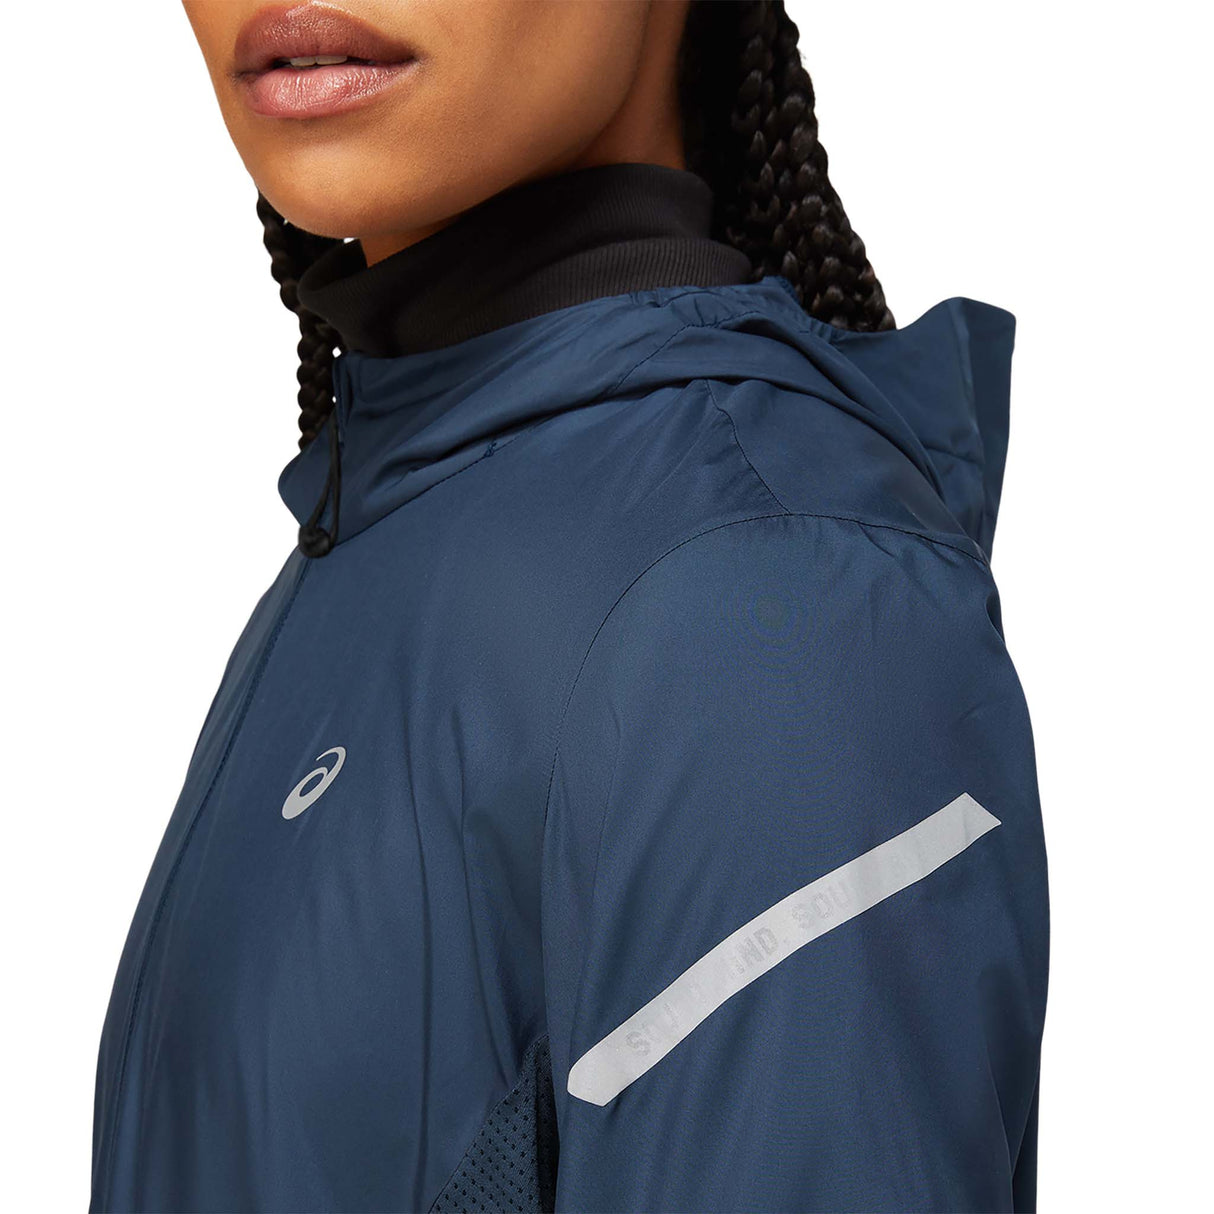 ASICS Lite-Show Jacket veste de course french blue femme lateral detail